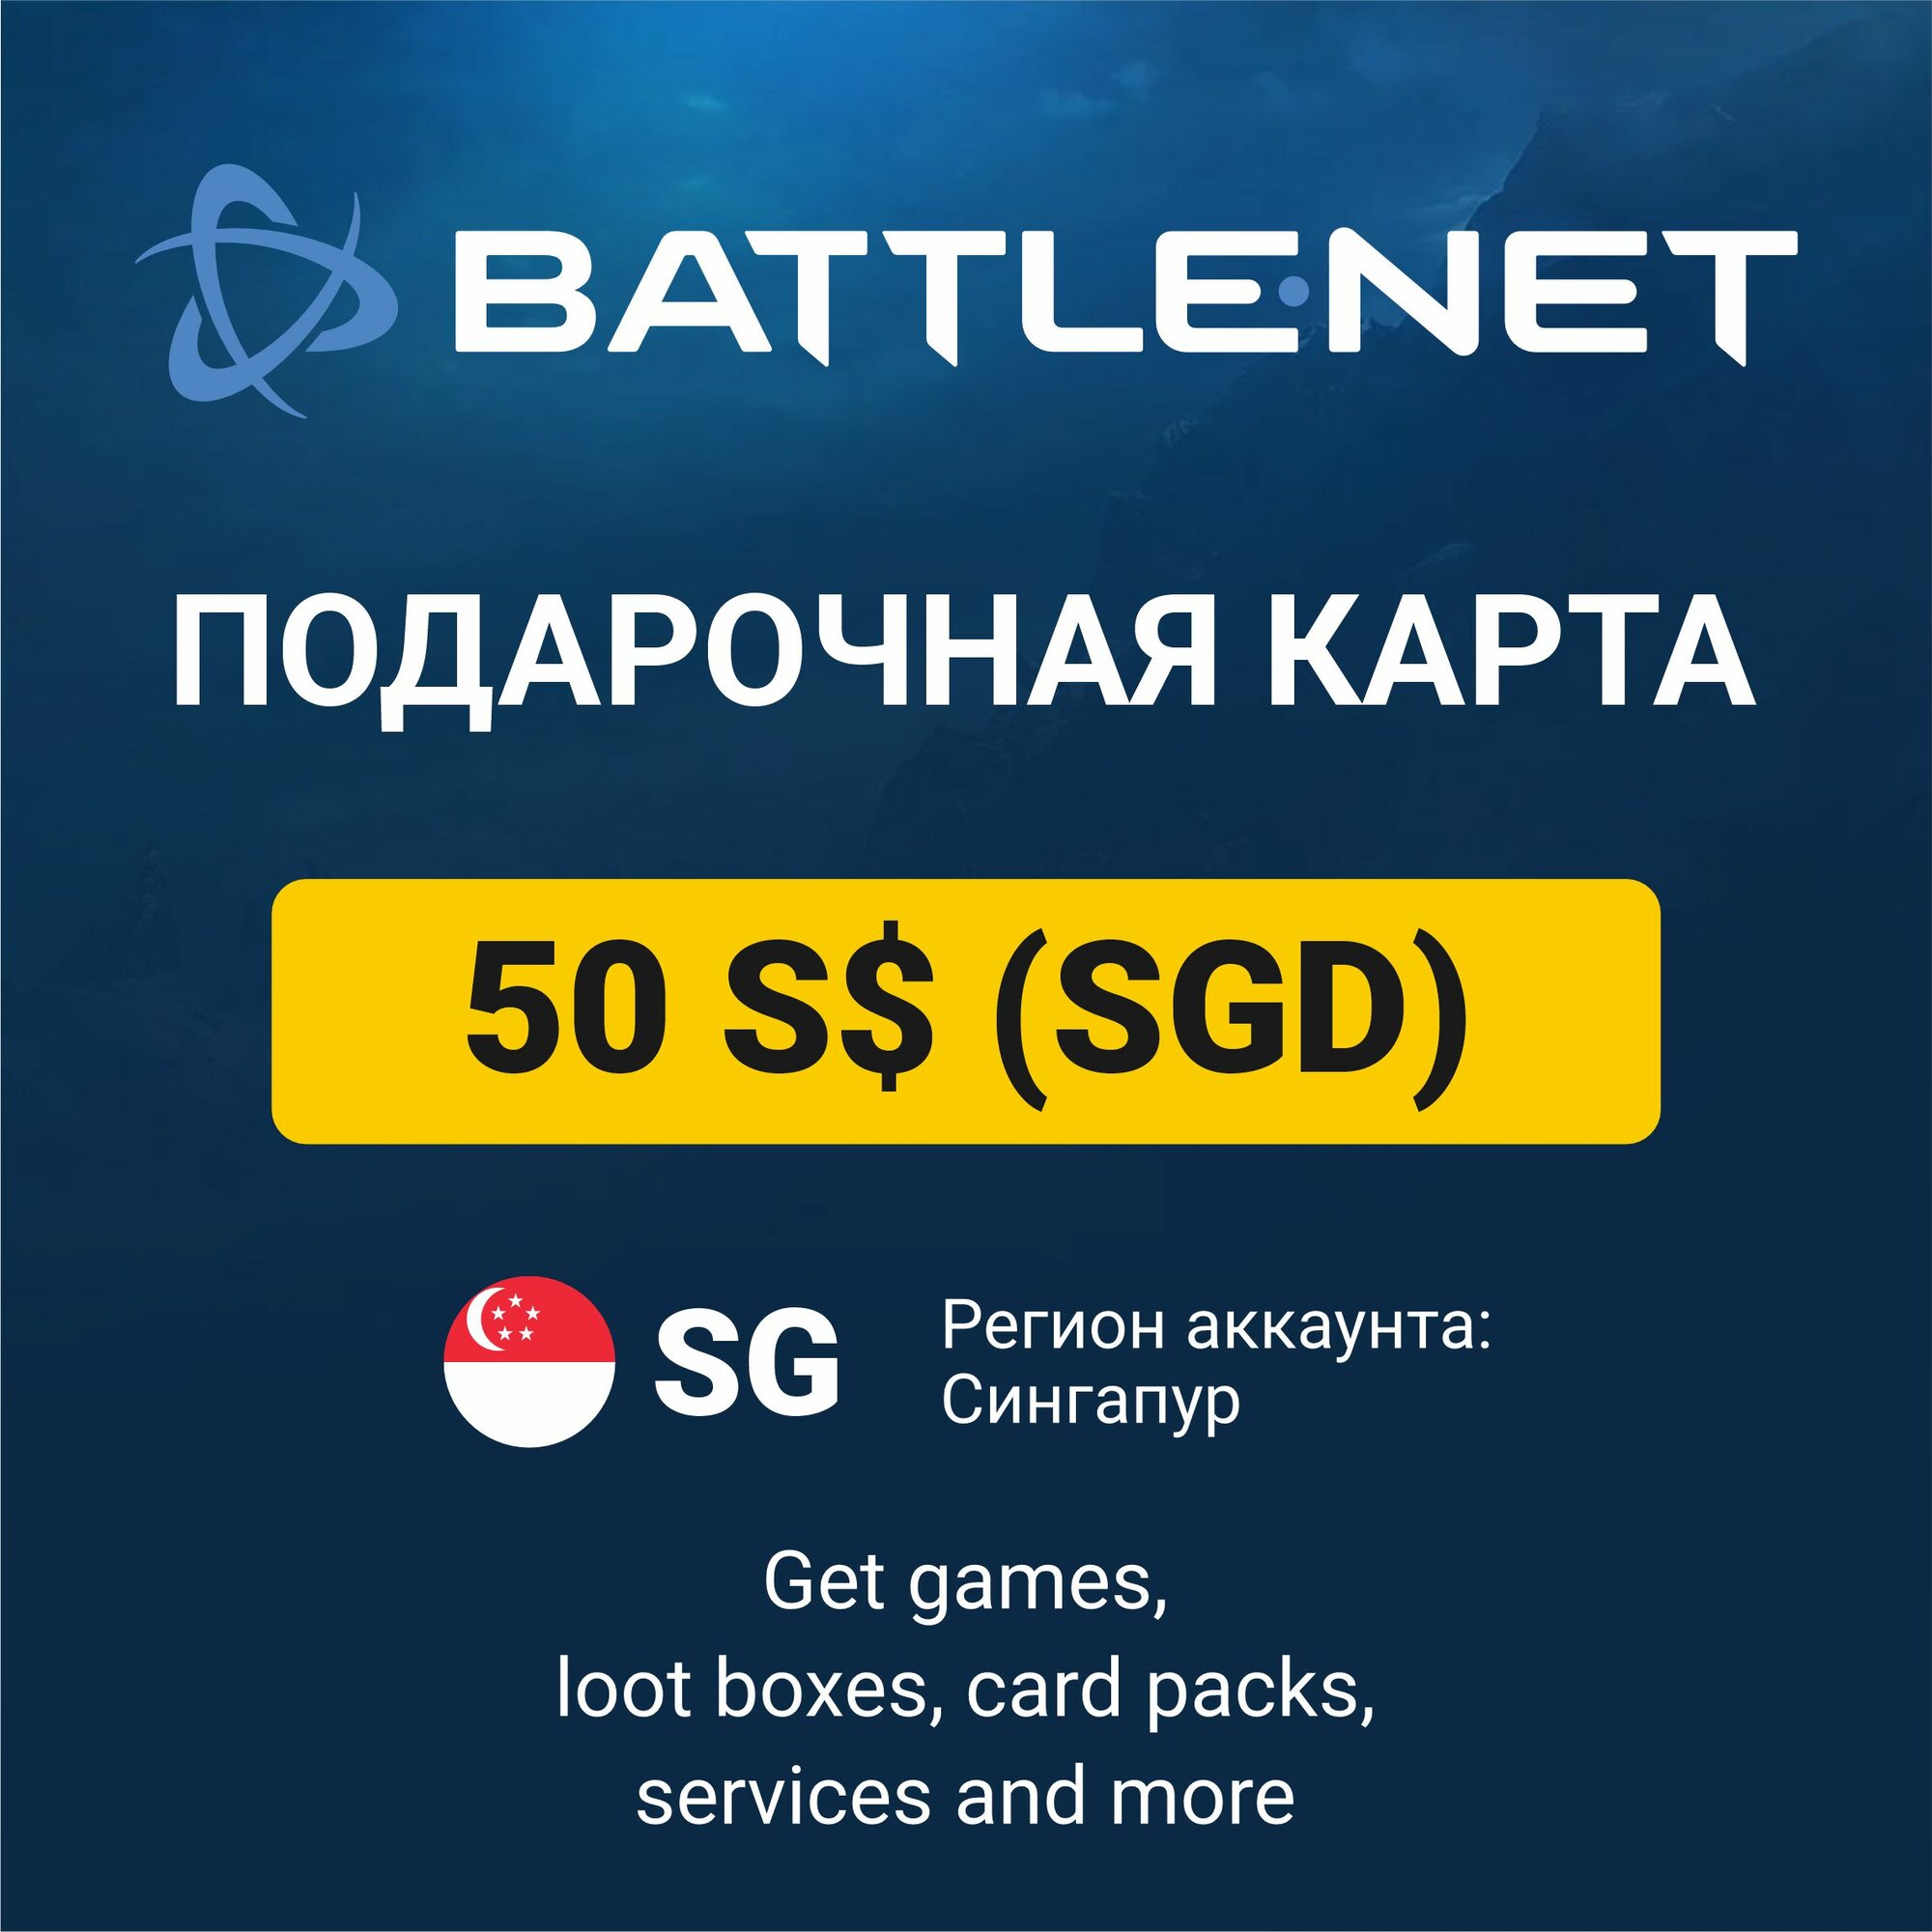 Подарочный код 10 SGD Battle.net Blizzard (регион: Сингапур) карта оплаты / цифровой код